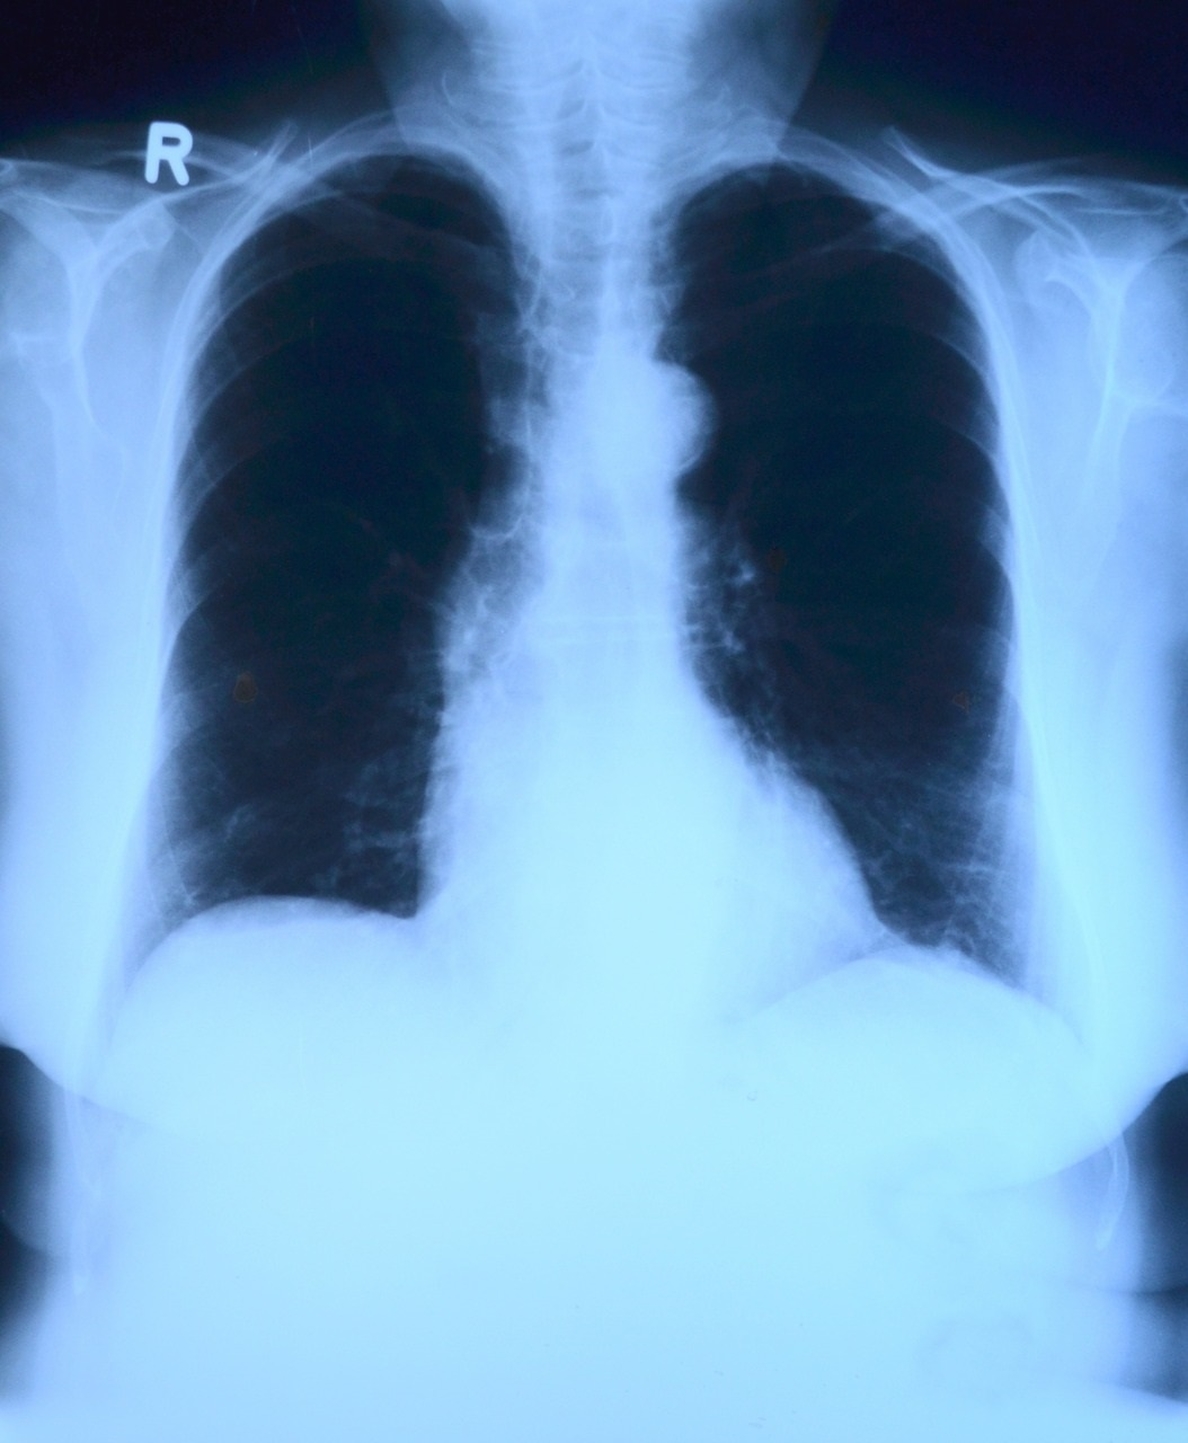 Solo un 10% de los pulmones donados terminan siendo trasplantados